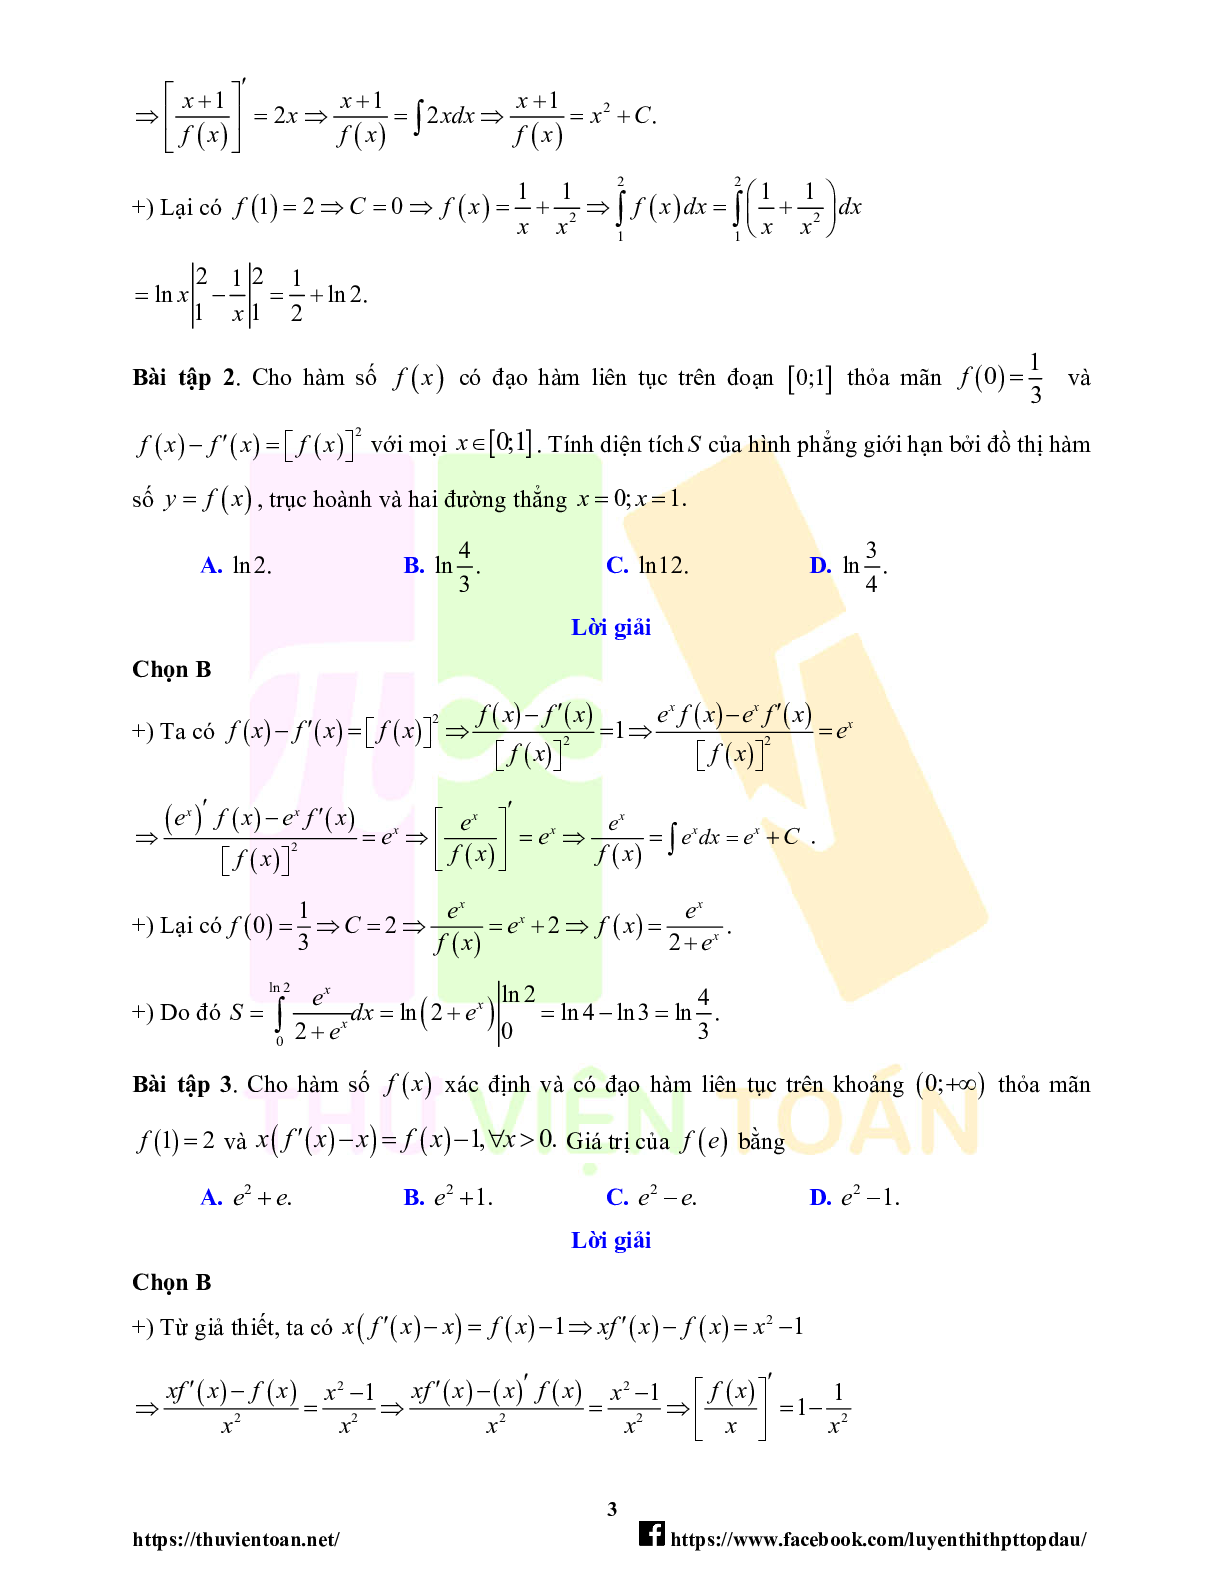 Lý thuyết và bài tập về quy tắc đạo hàm trong bài toán tích phân - có đáp án chi tiết (trang 3)